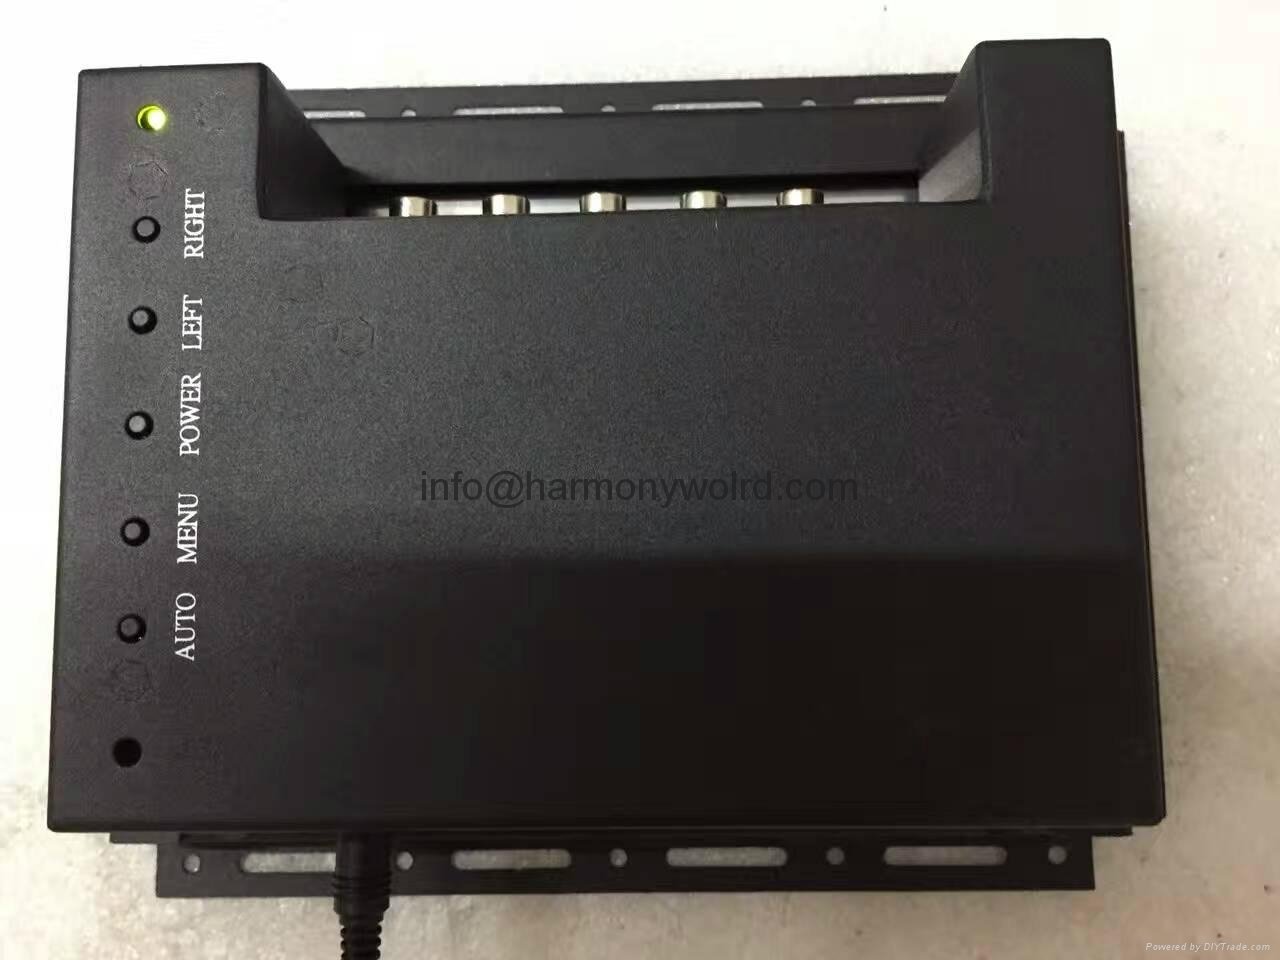 LCD Upgrade Monitor For Modicon Panelmate Plus Compact MM-PMA1-200 10